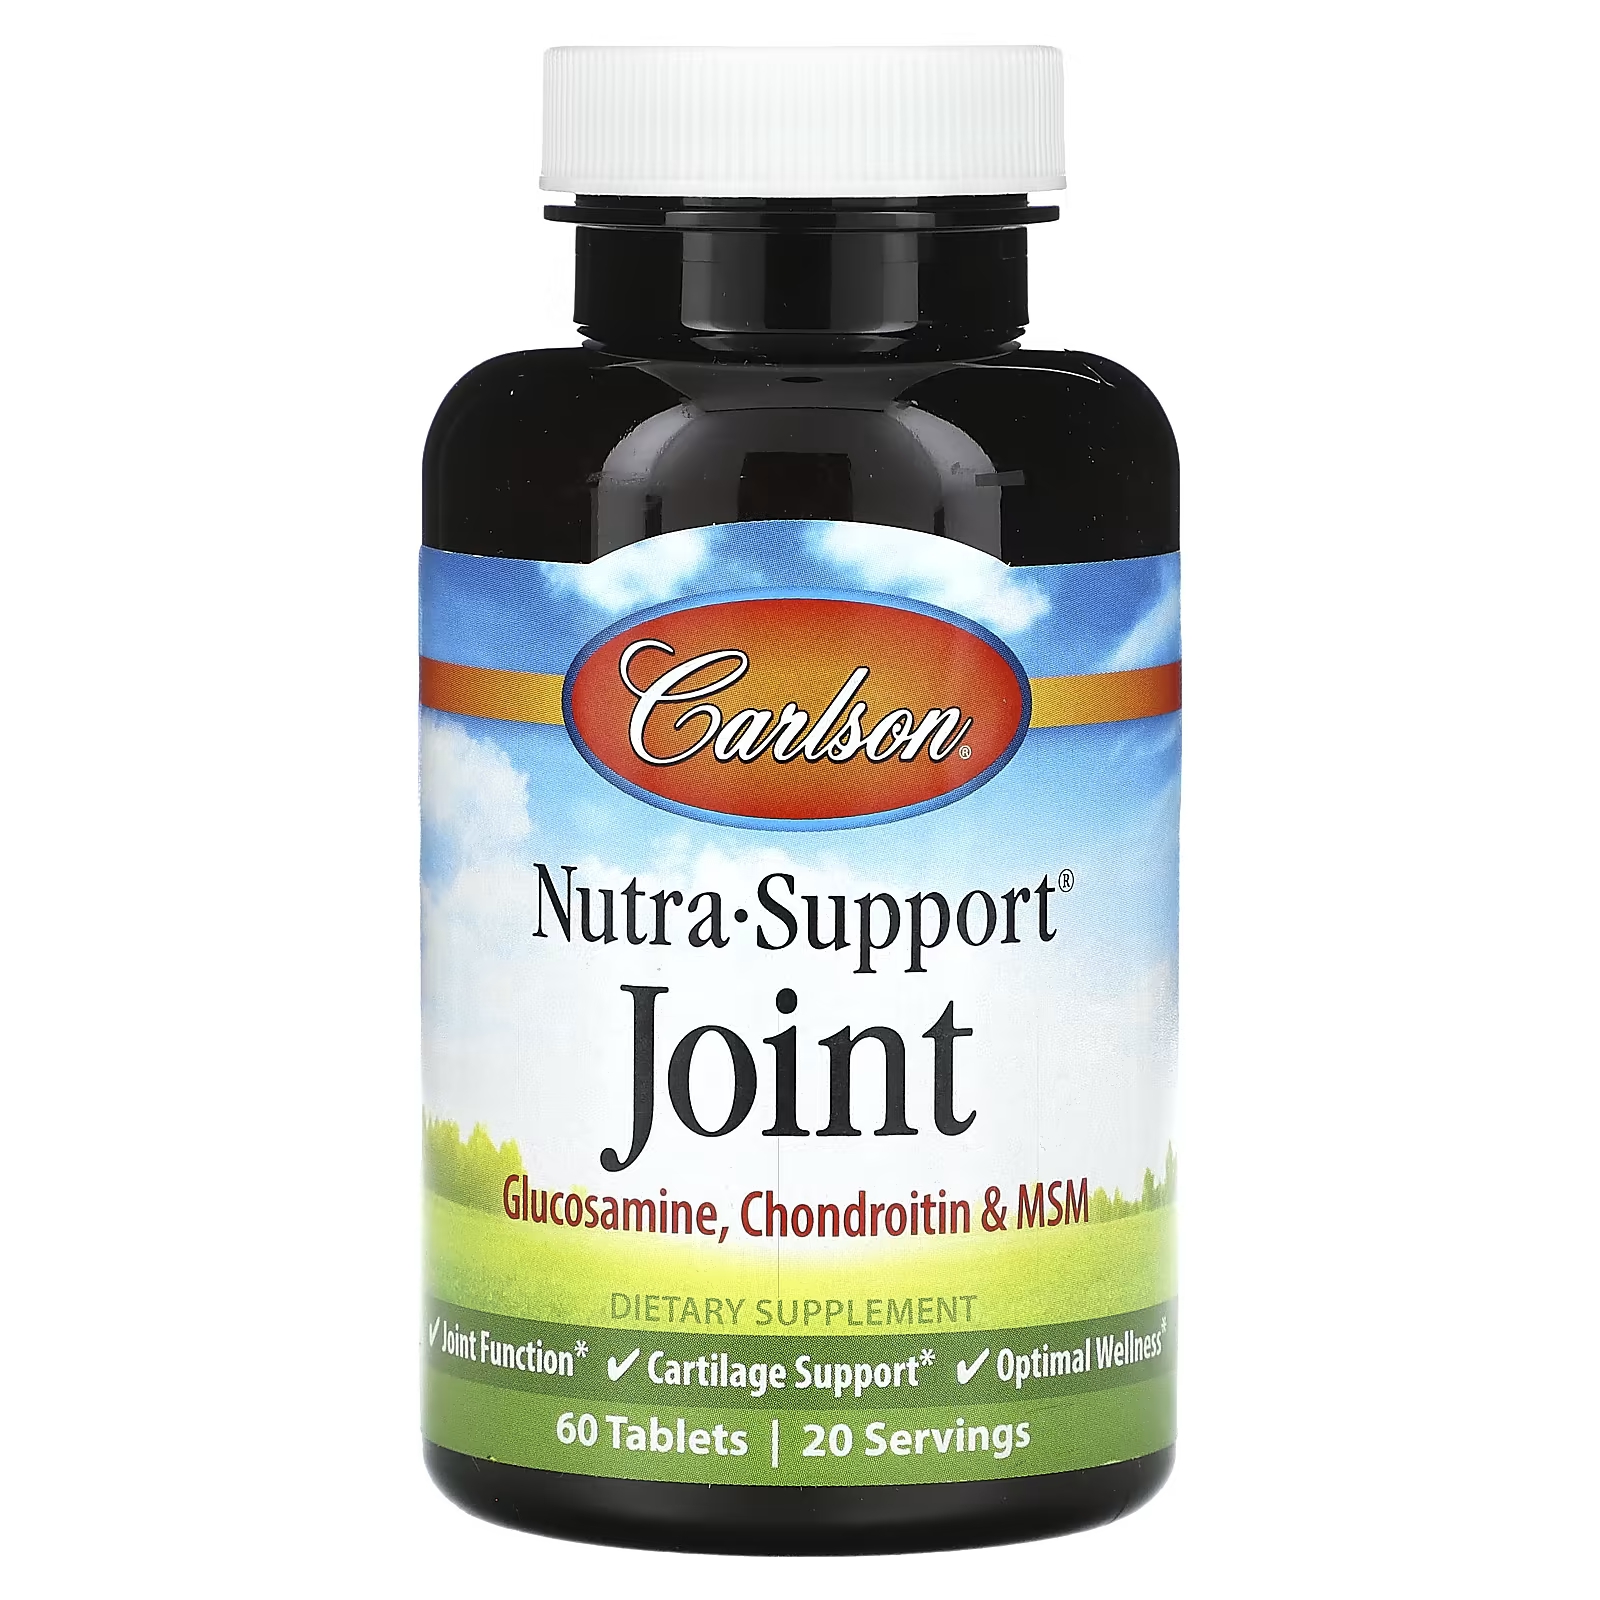 Пищевая добавка Carlson Nutra-Support Joint, 60 таблеток пищевая добавка nutrabio labs глюкозамин хондроитин и мсм 120 капсул